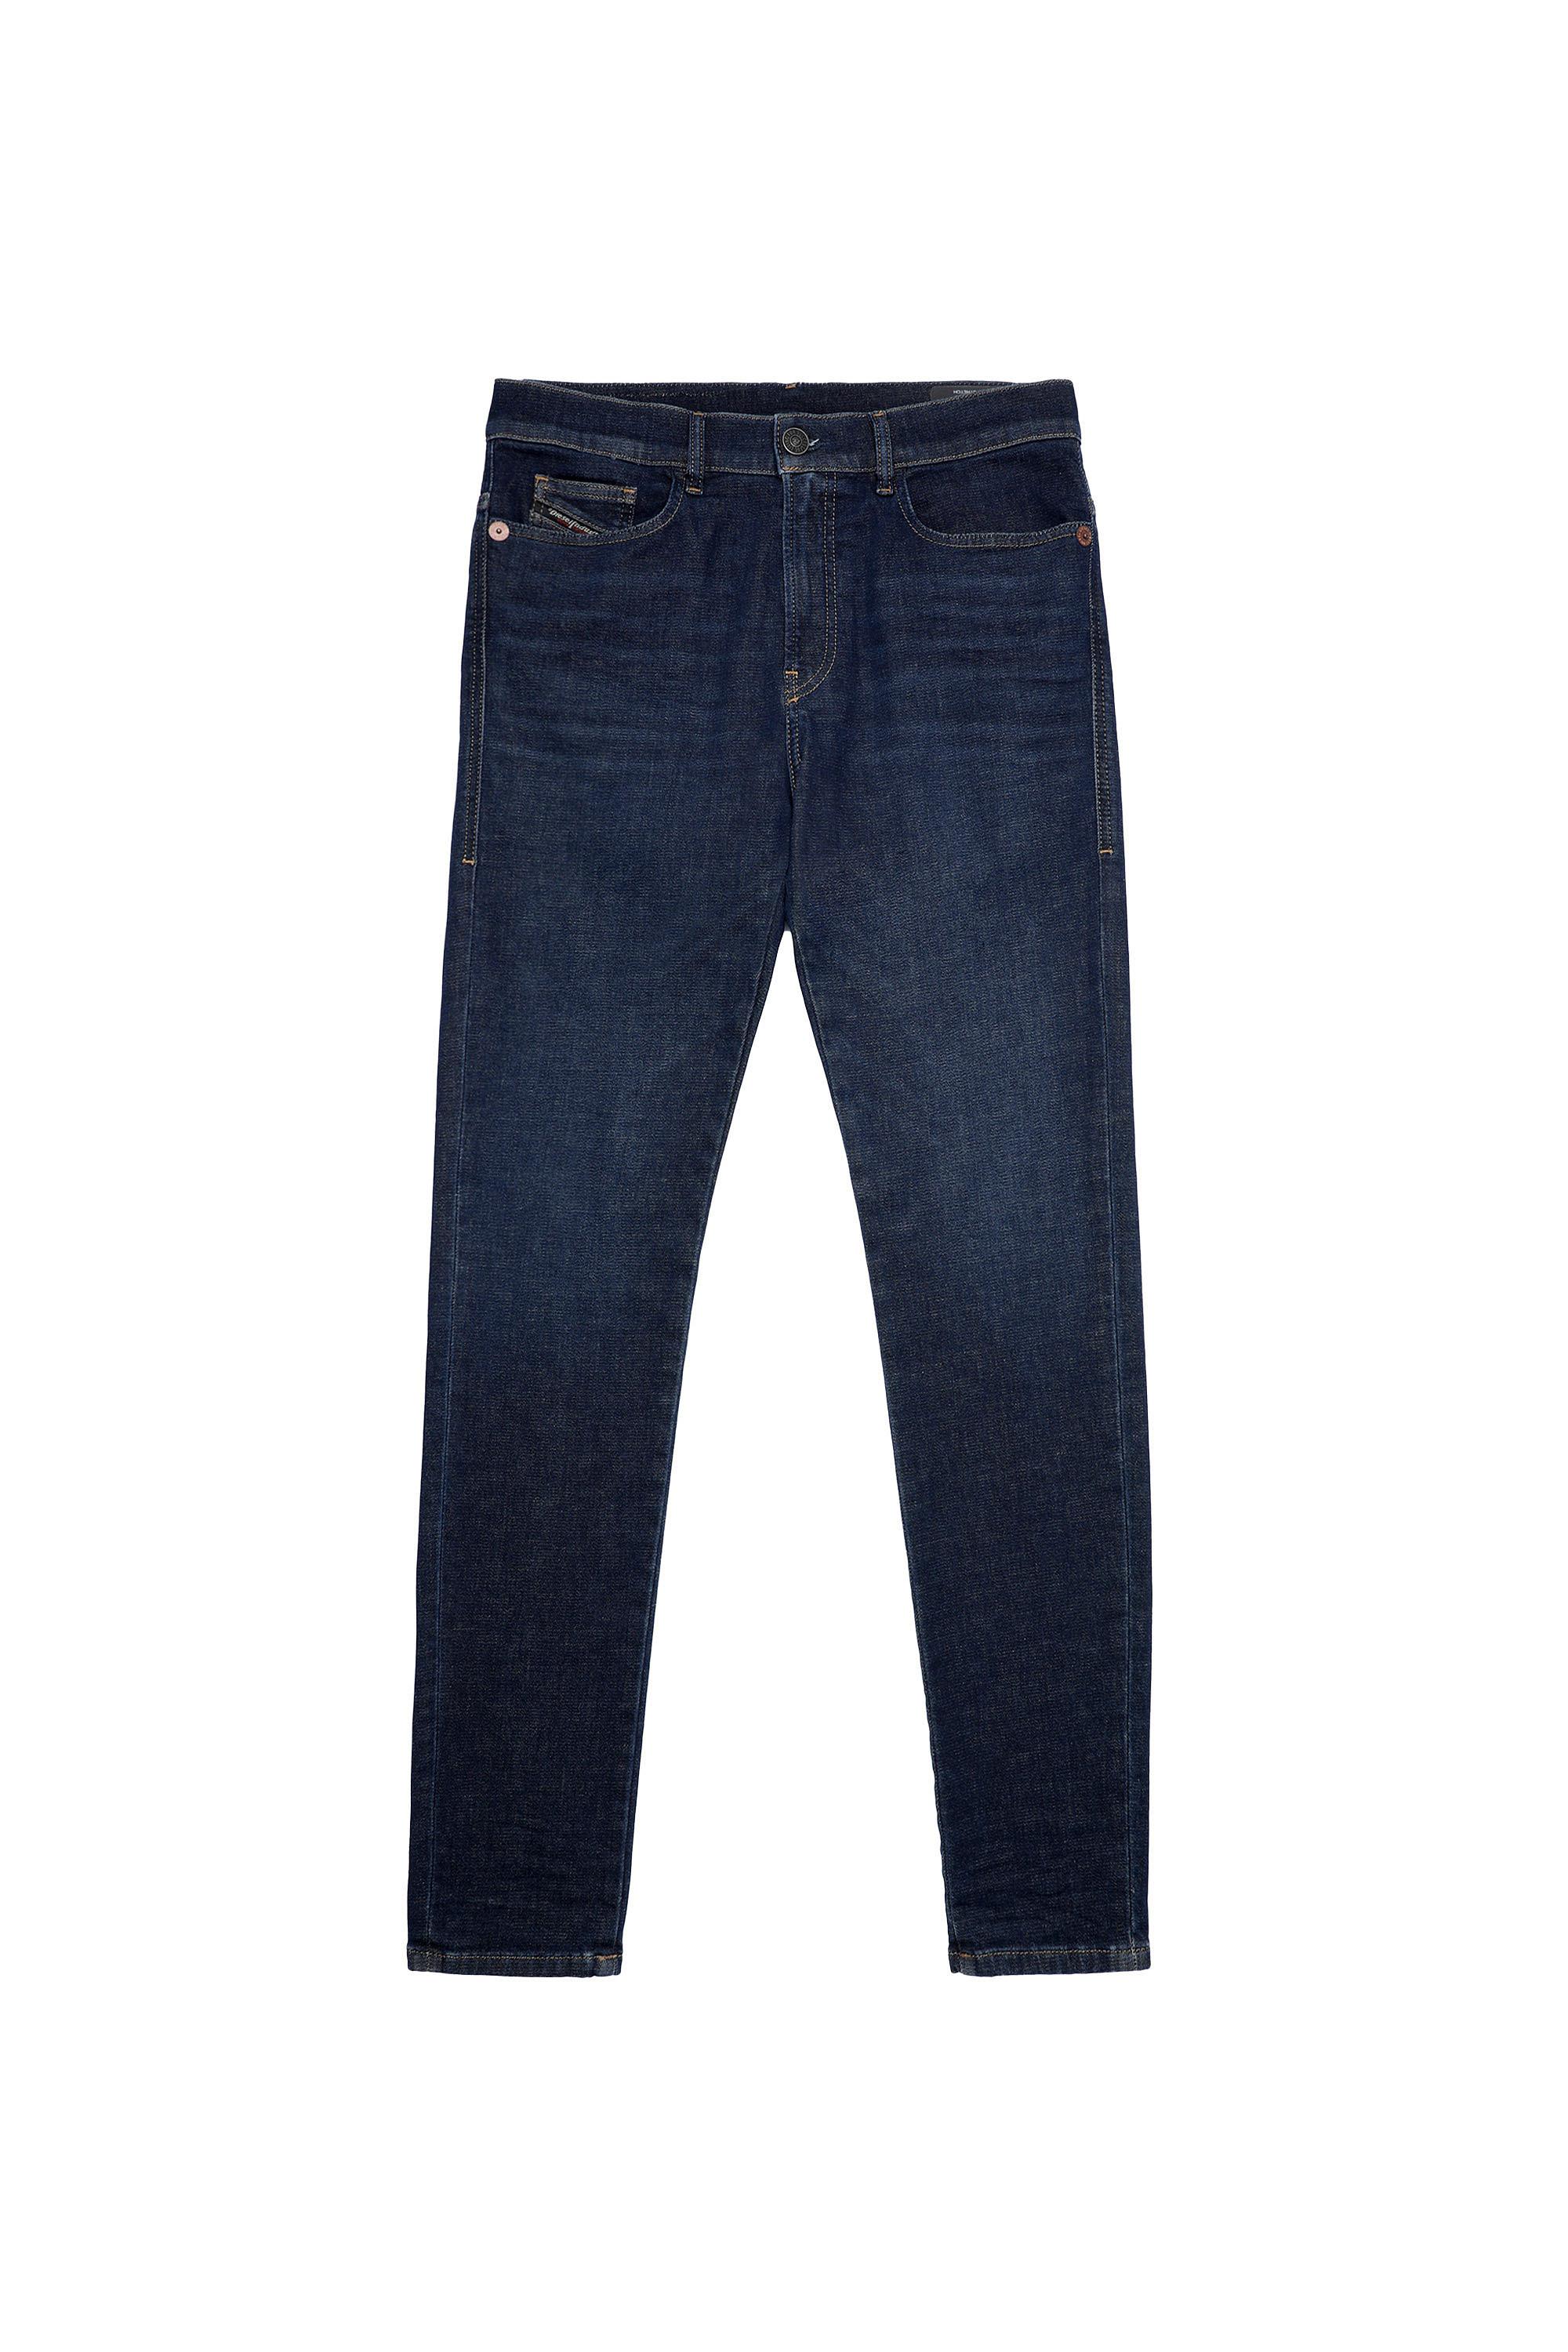 Diesel - D-Amny Skinny JoggJeans® Z69VI, Dark Blue - Image 2